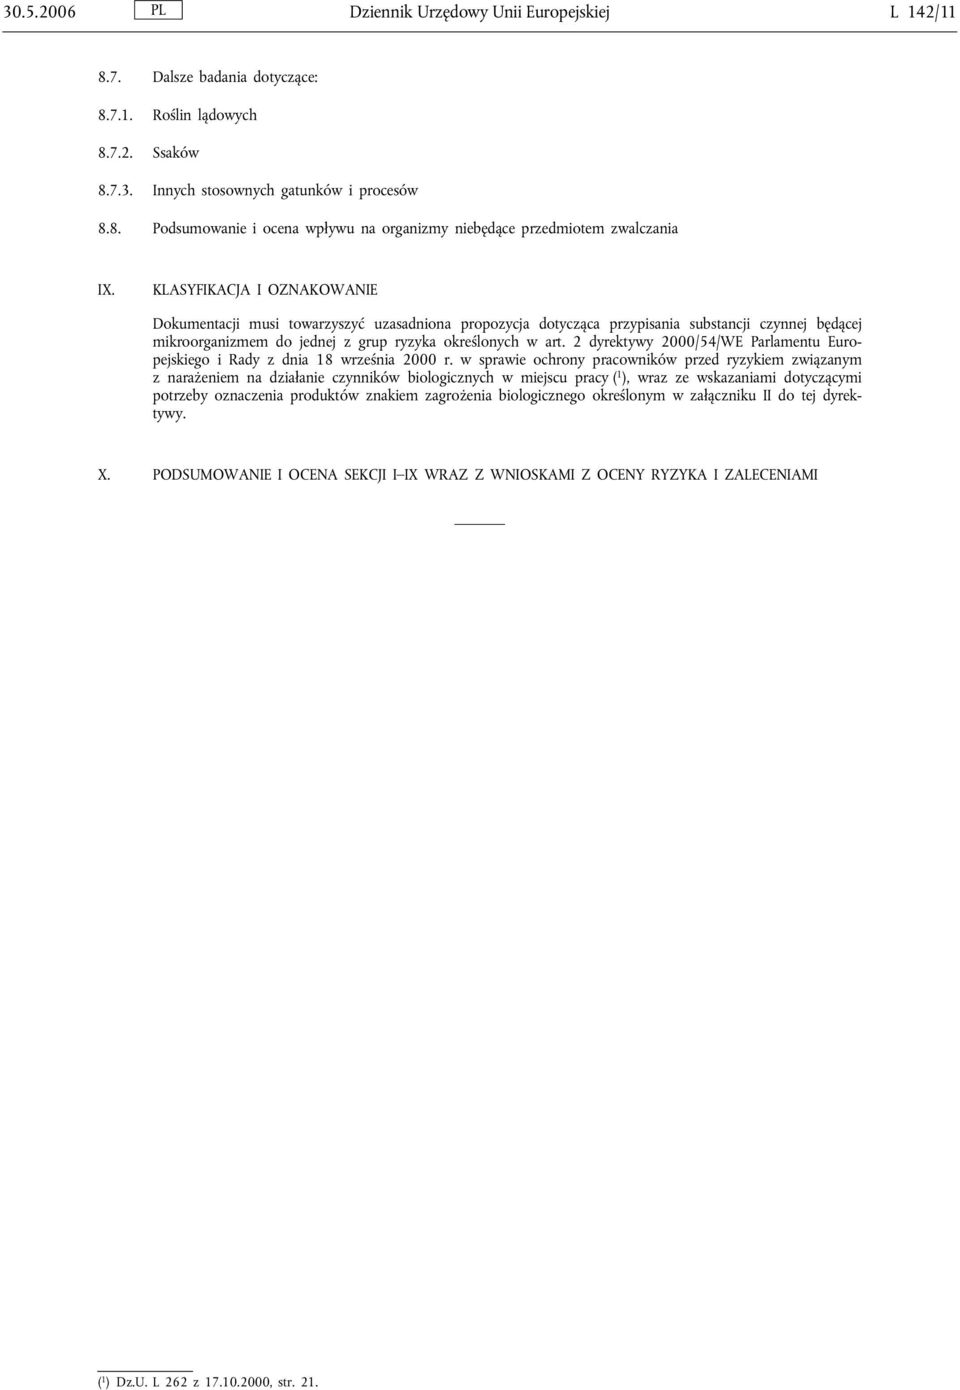 2 dyrektywy 2000/54/WE Parlamentu Europejskiego i Rady z dnia 18 września 2000 r.